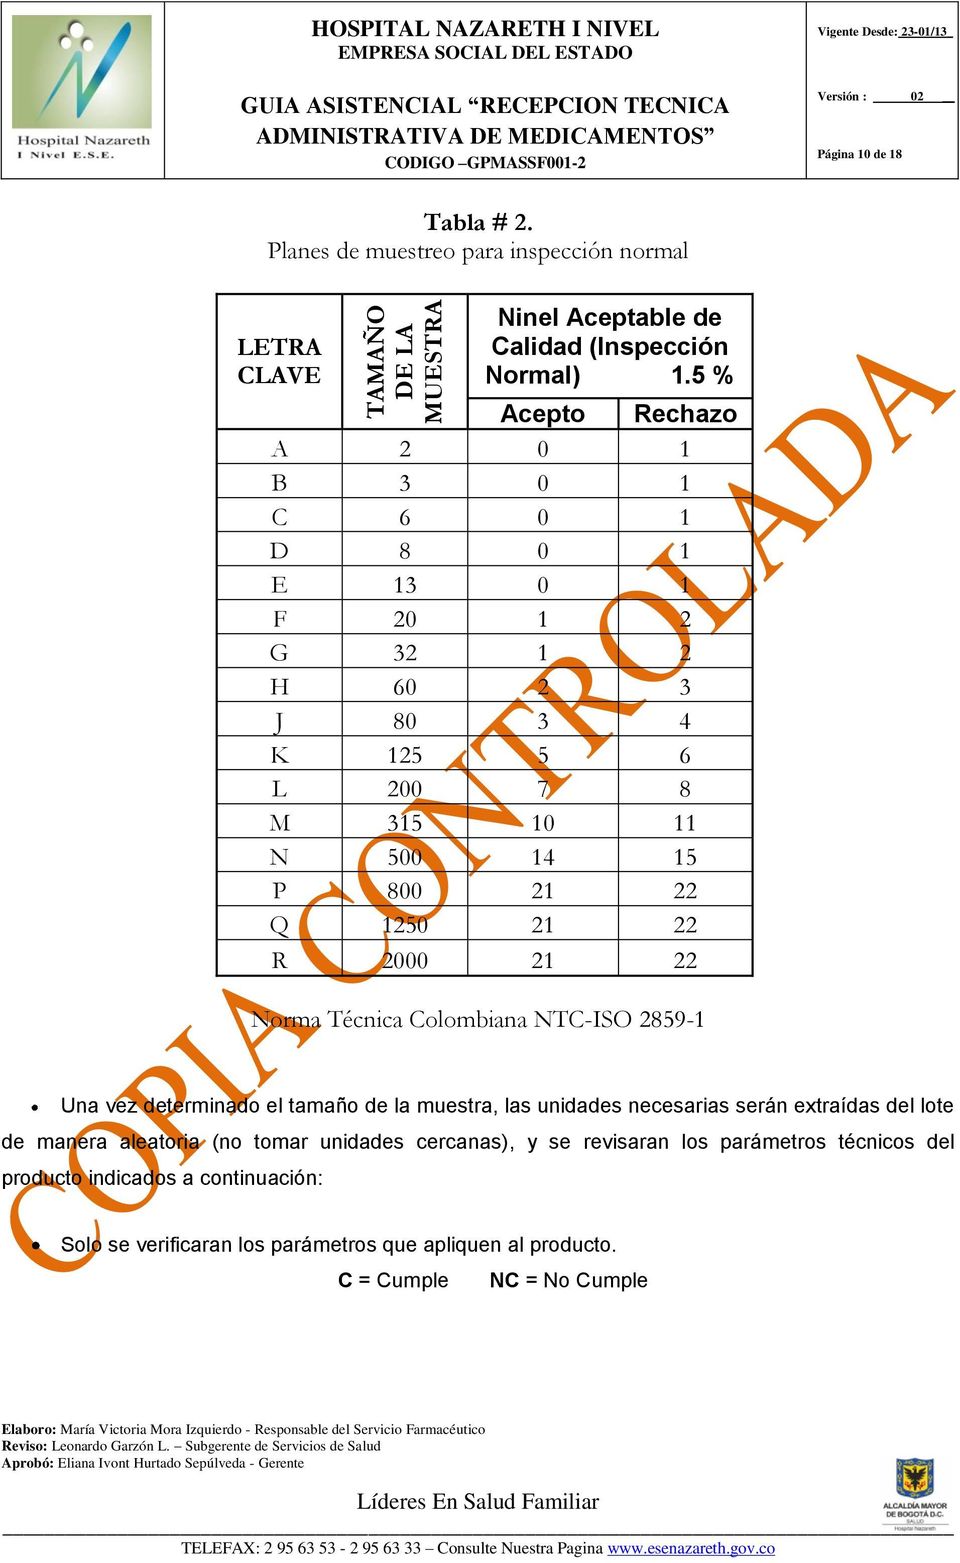 Colombiana NTC-ISO 2859-1 Una vez determinado el tamaño de la muestra, las unidades necesarias serán extraídas del lote de manera aleatoria (no tomar unidades cercanas), y se revisaran los